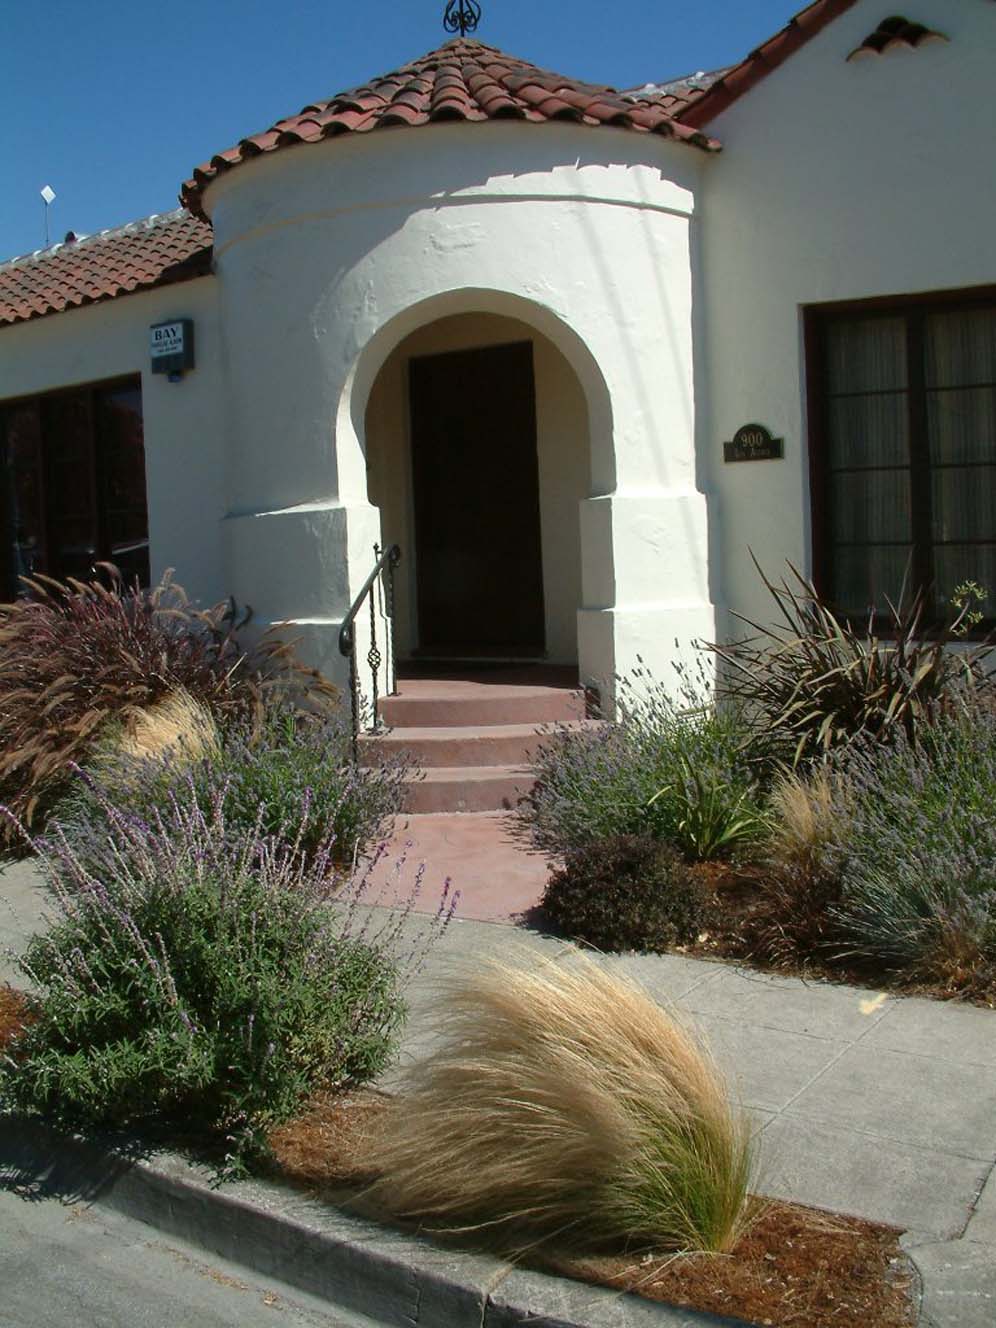 Curved Doorway and Garden